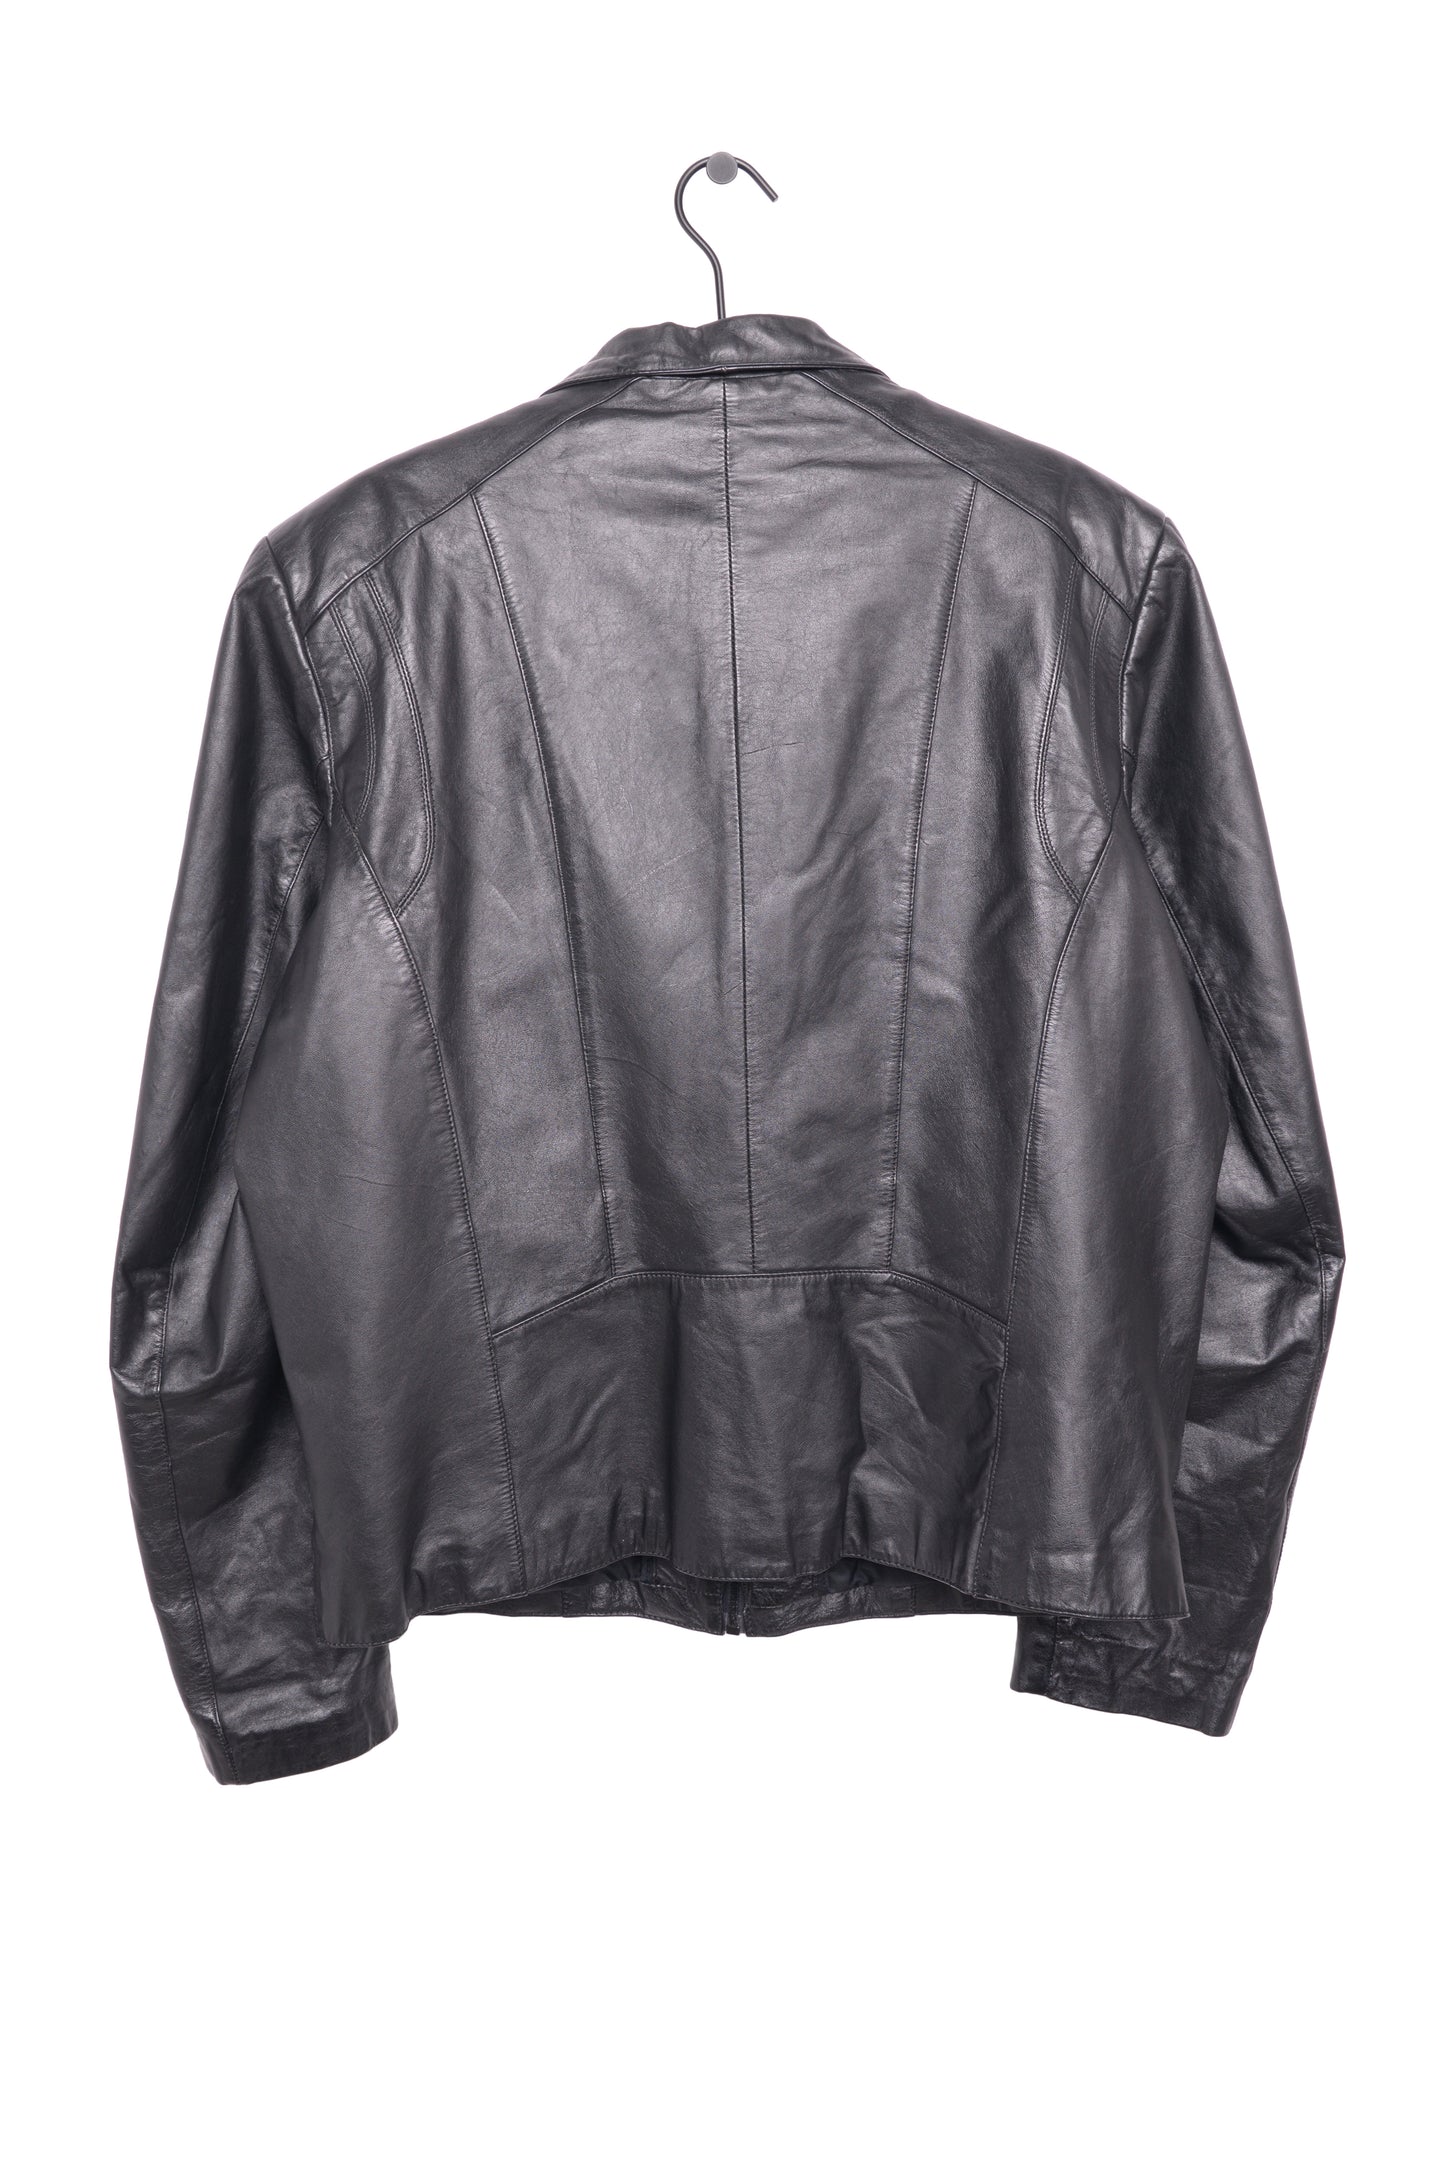 1980s Leather Jacket